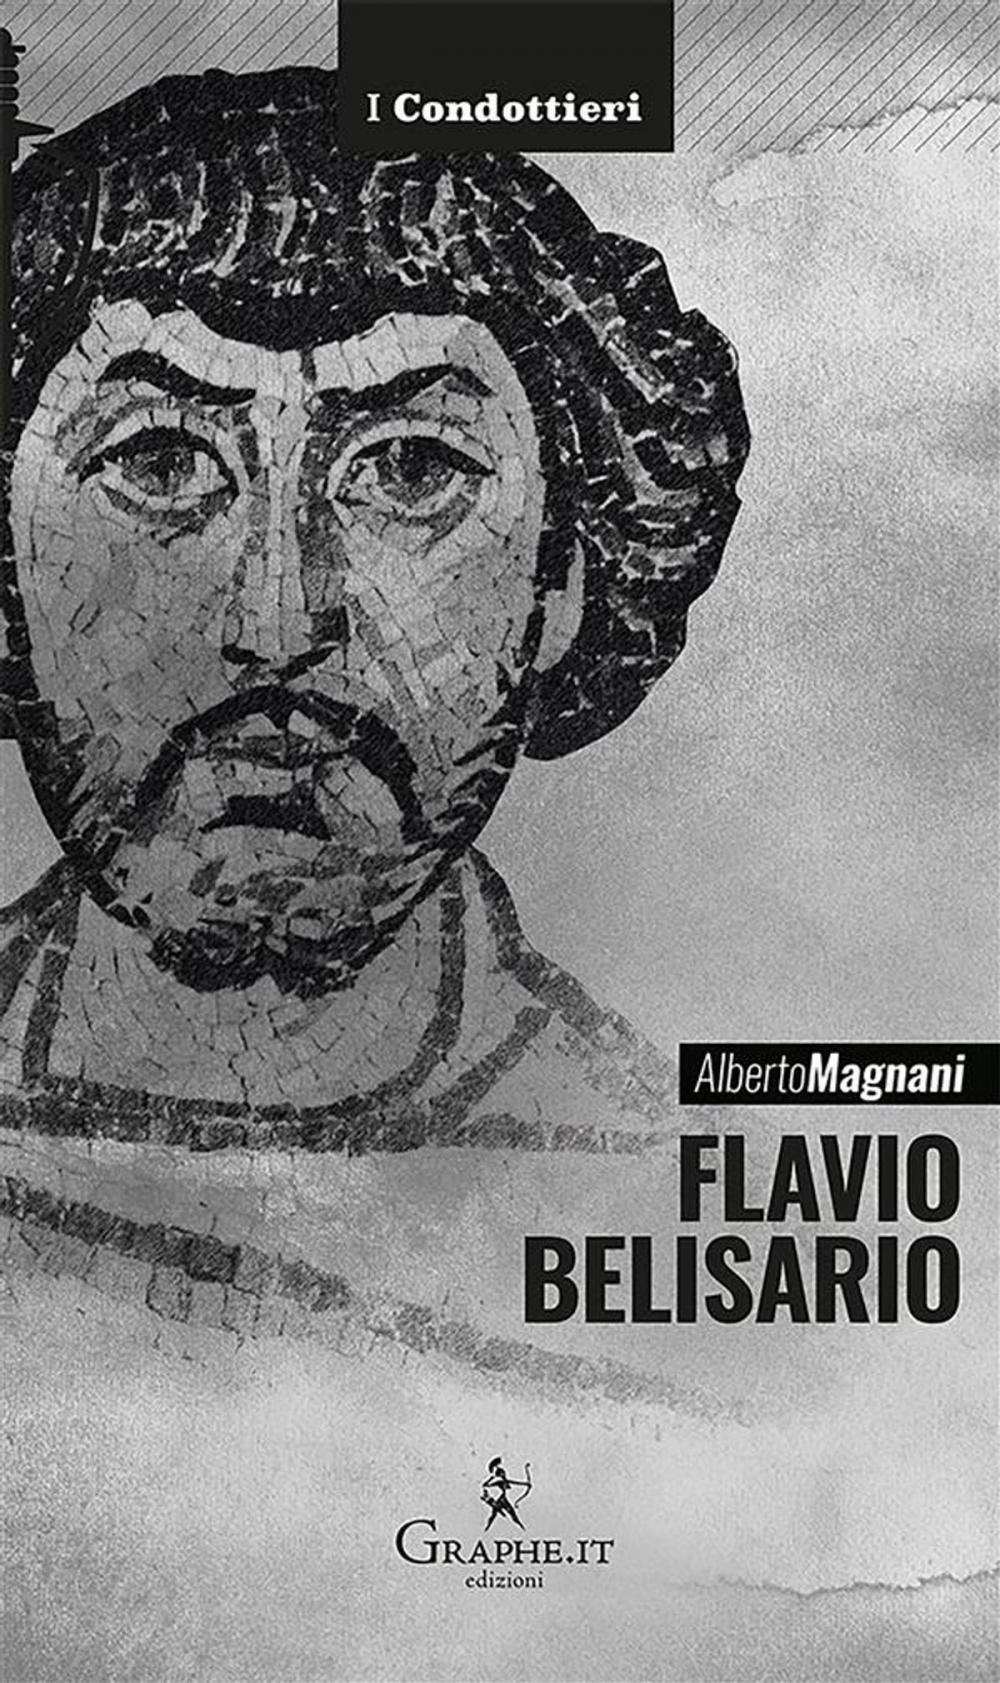 Big bigCover of Flavio Belisario